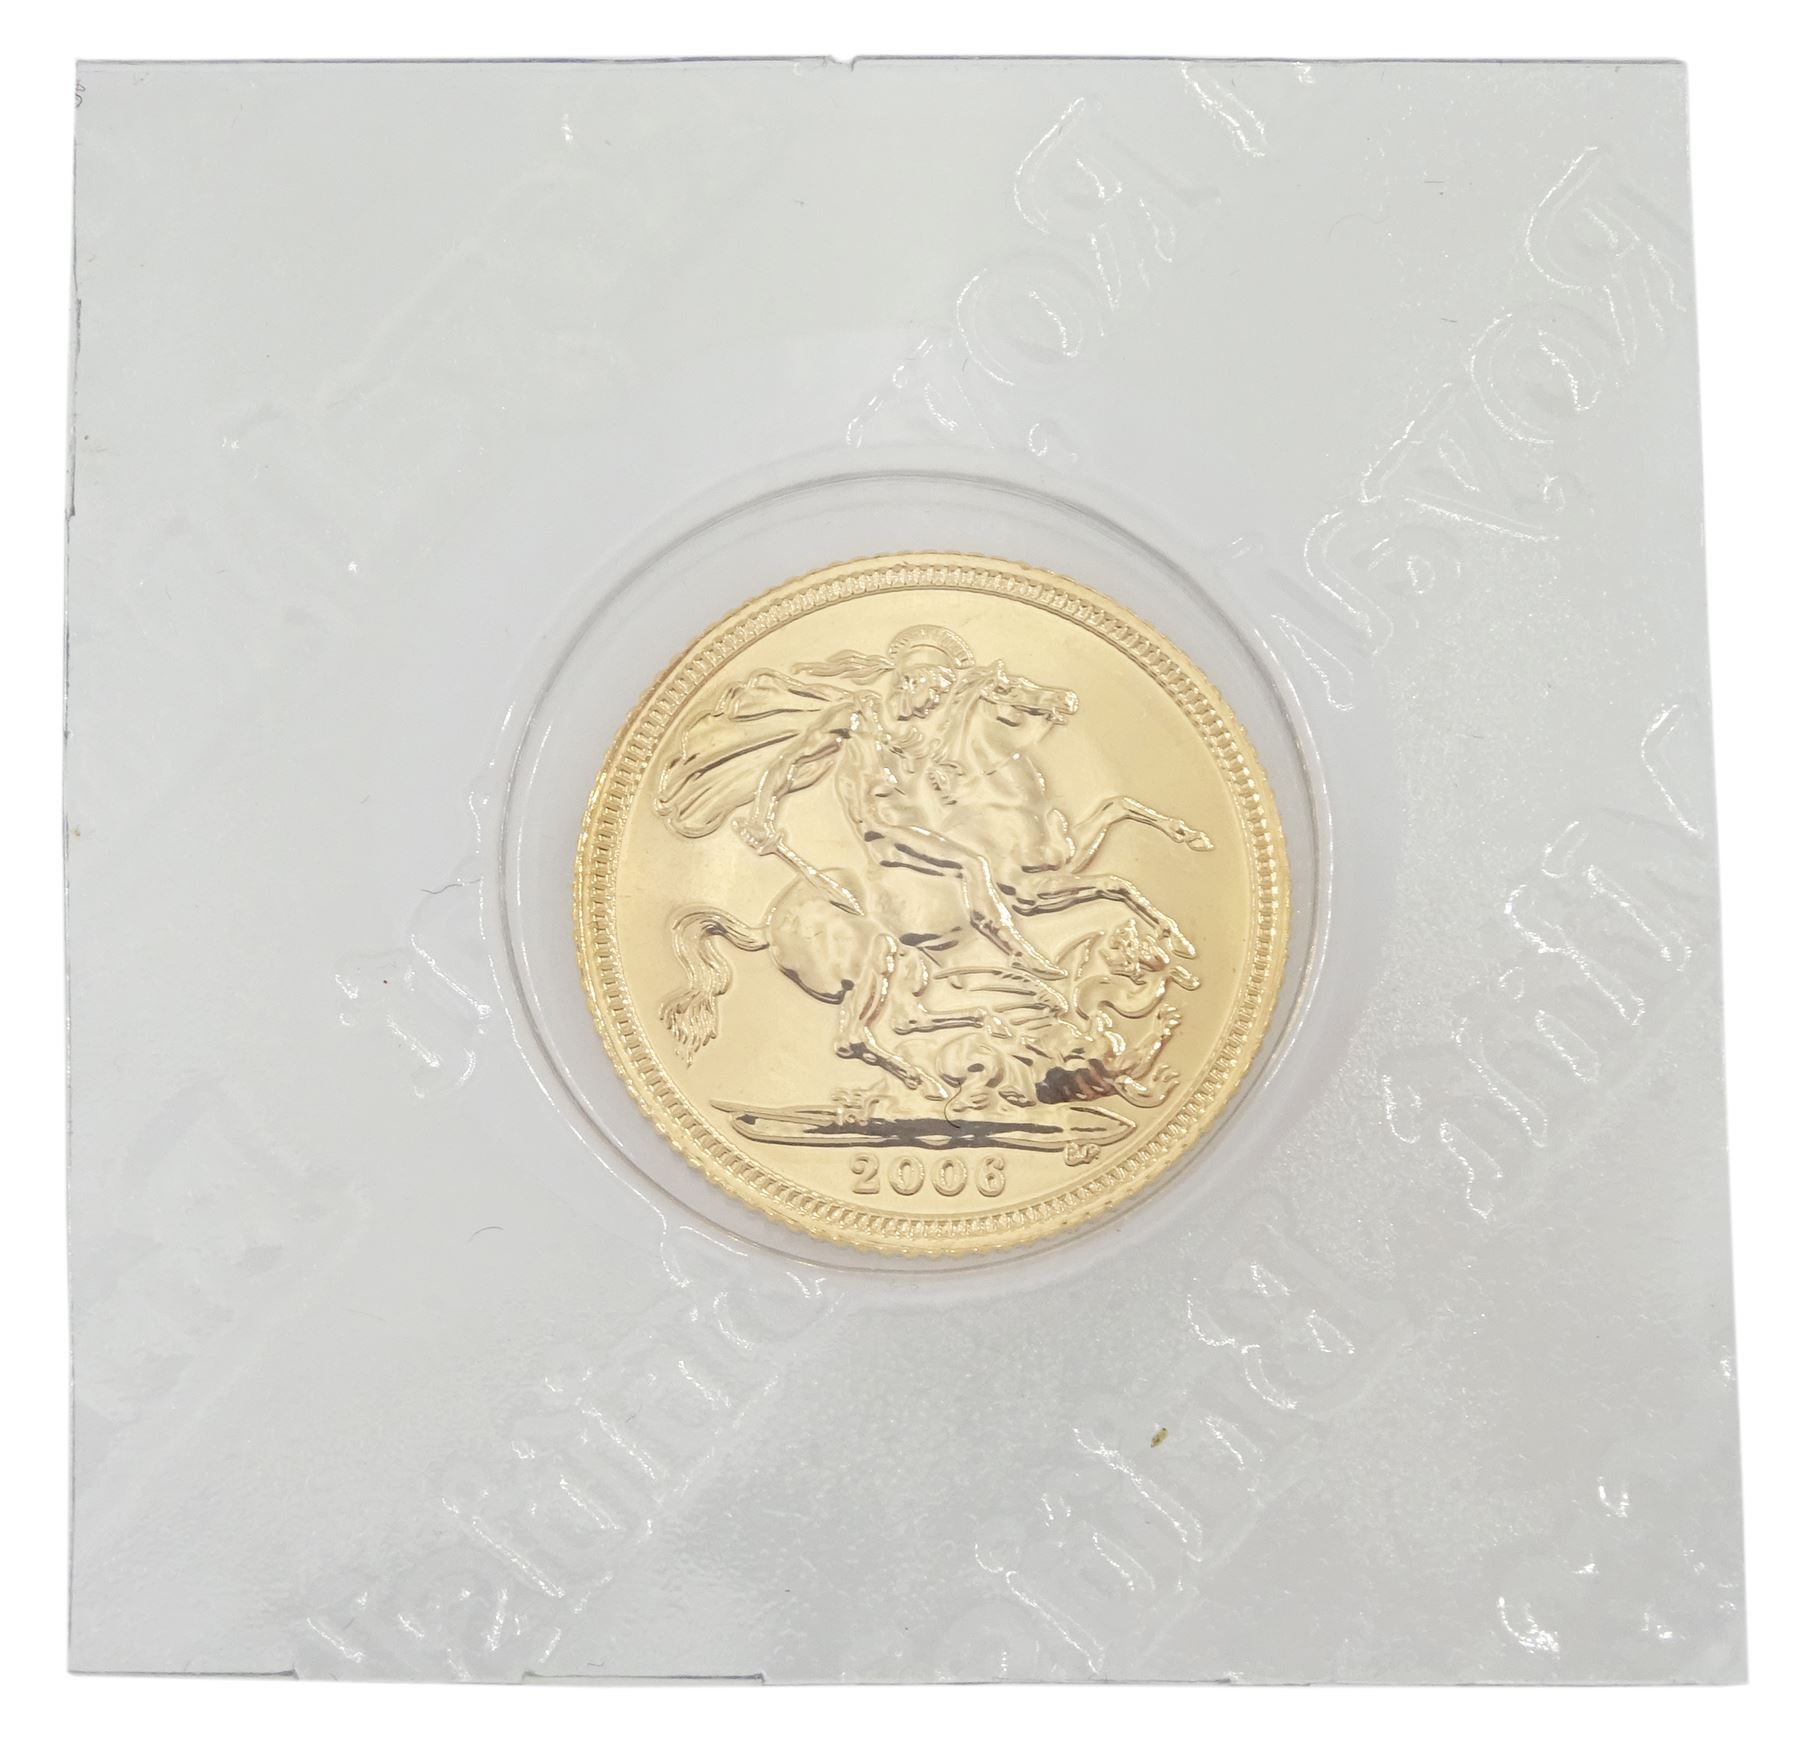 Queen Elizabeth II 2006 gold half sovereign coin - Image 2 of 2